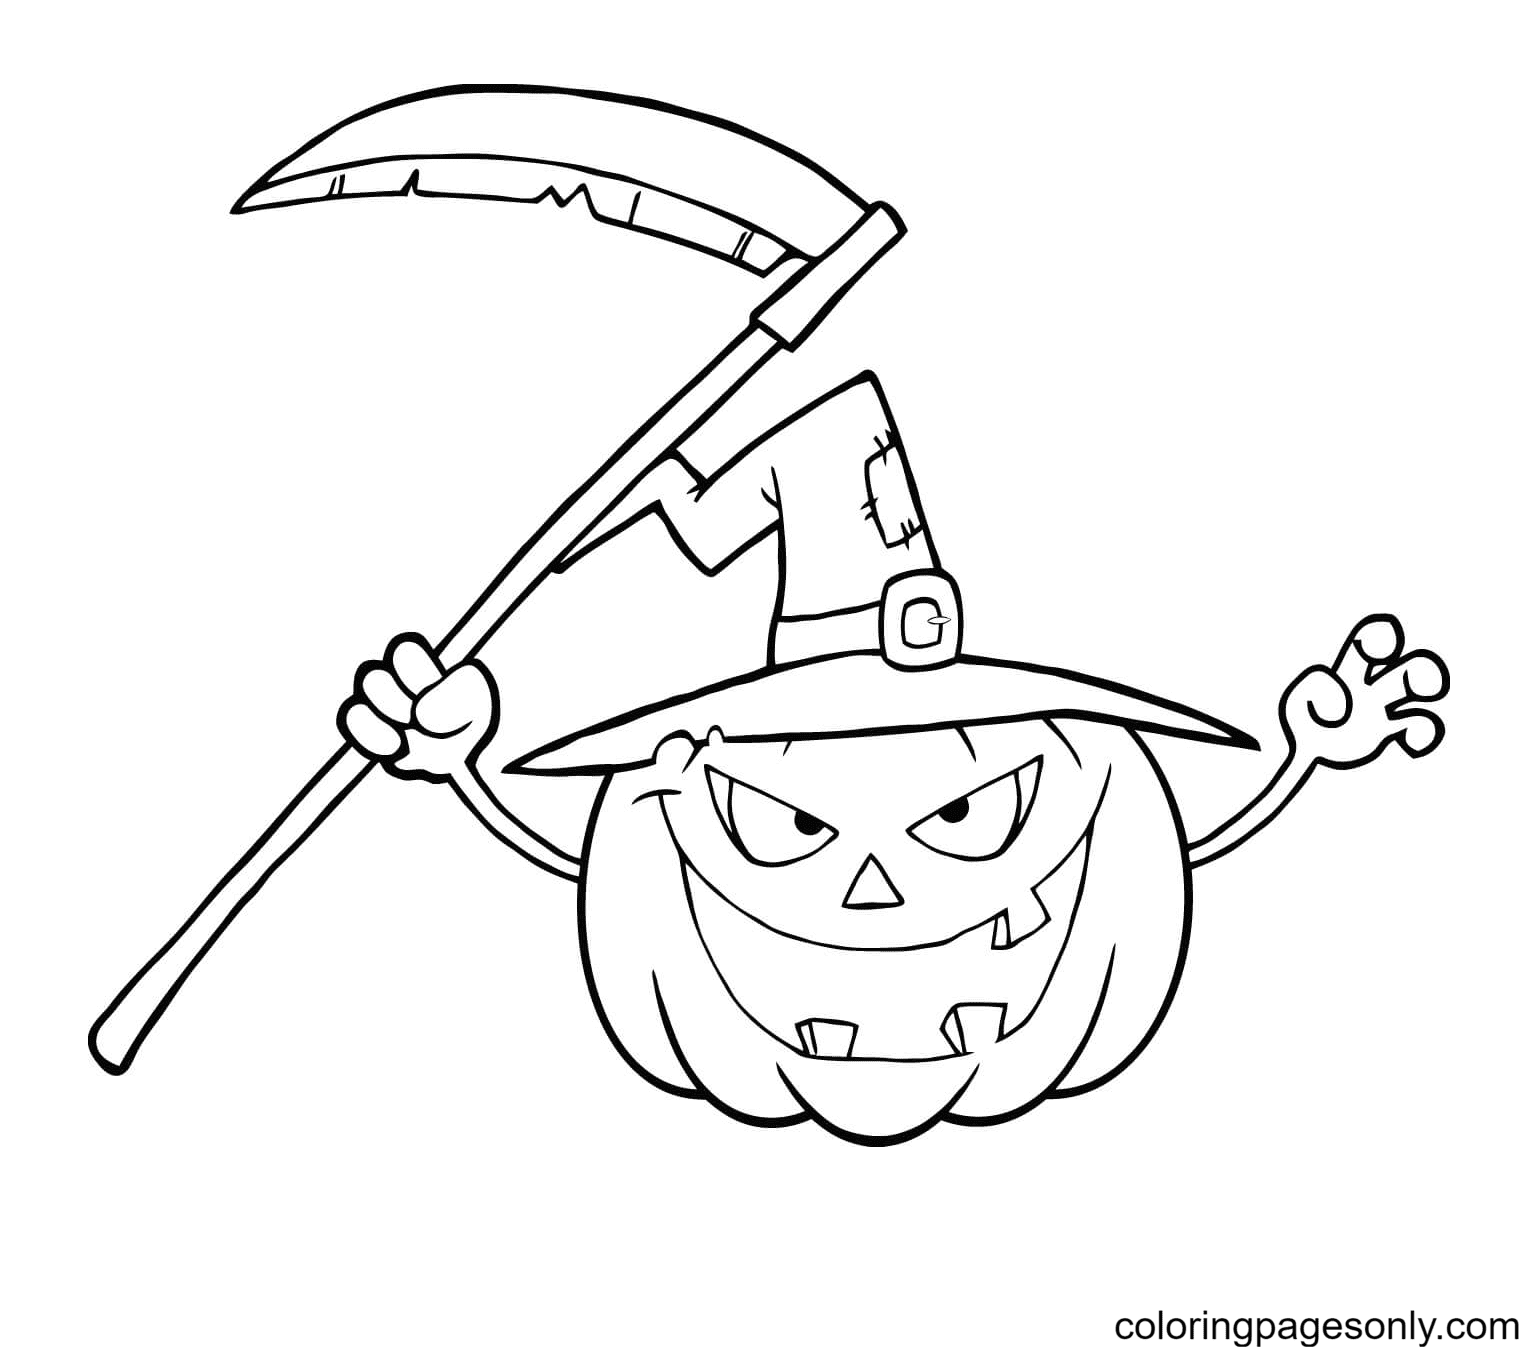 Calabaza aterradora de Halloween con sombrero de bruja y guadaña de Jack O'Lantern